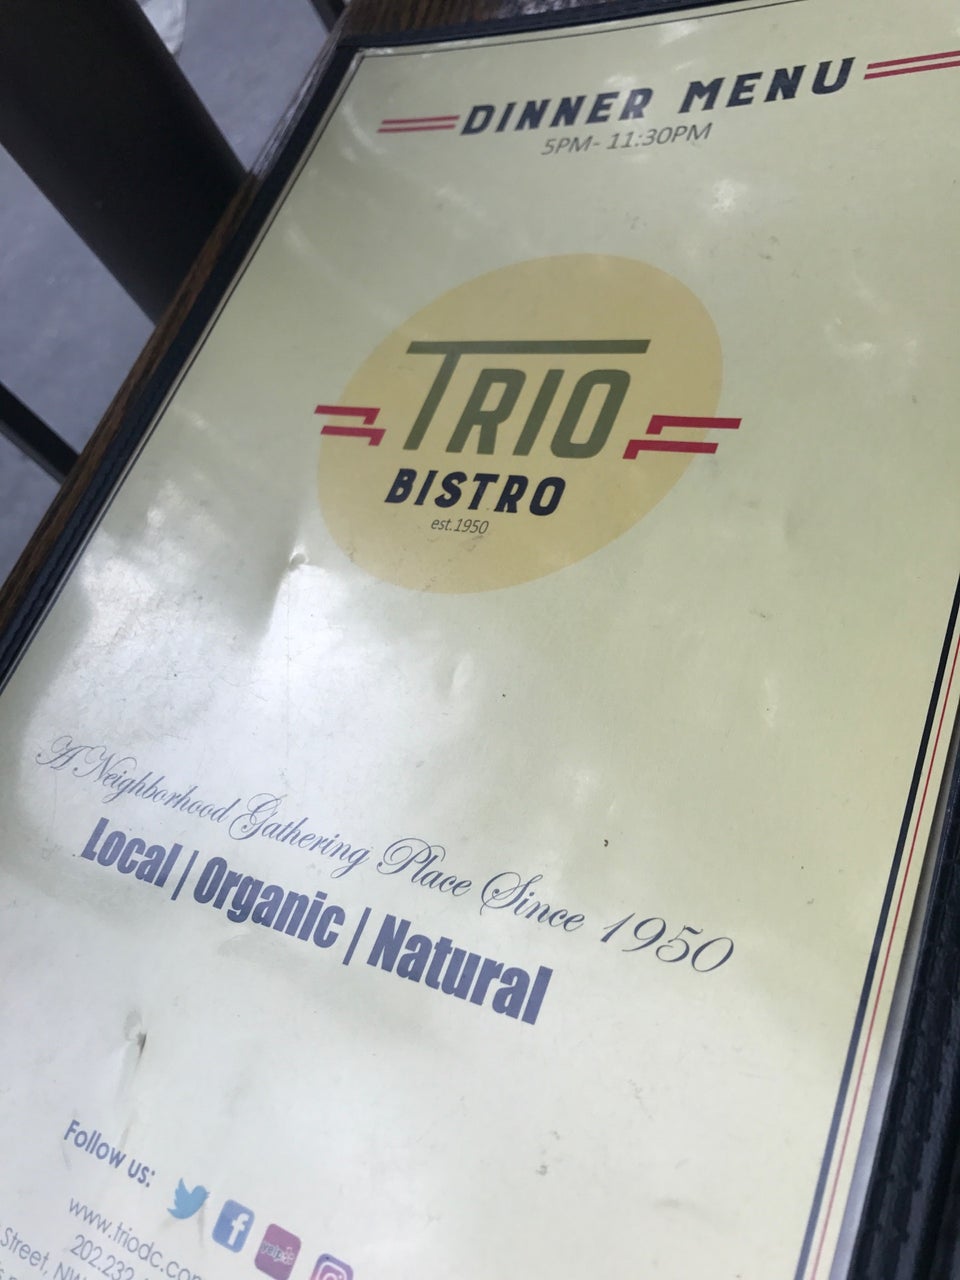 Photo of Trio Restaurant